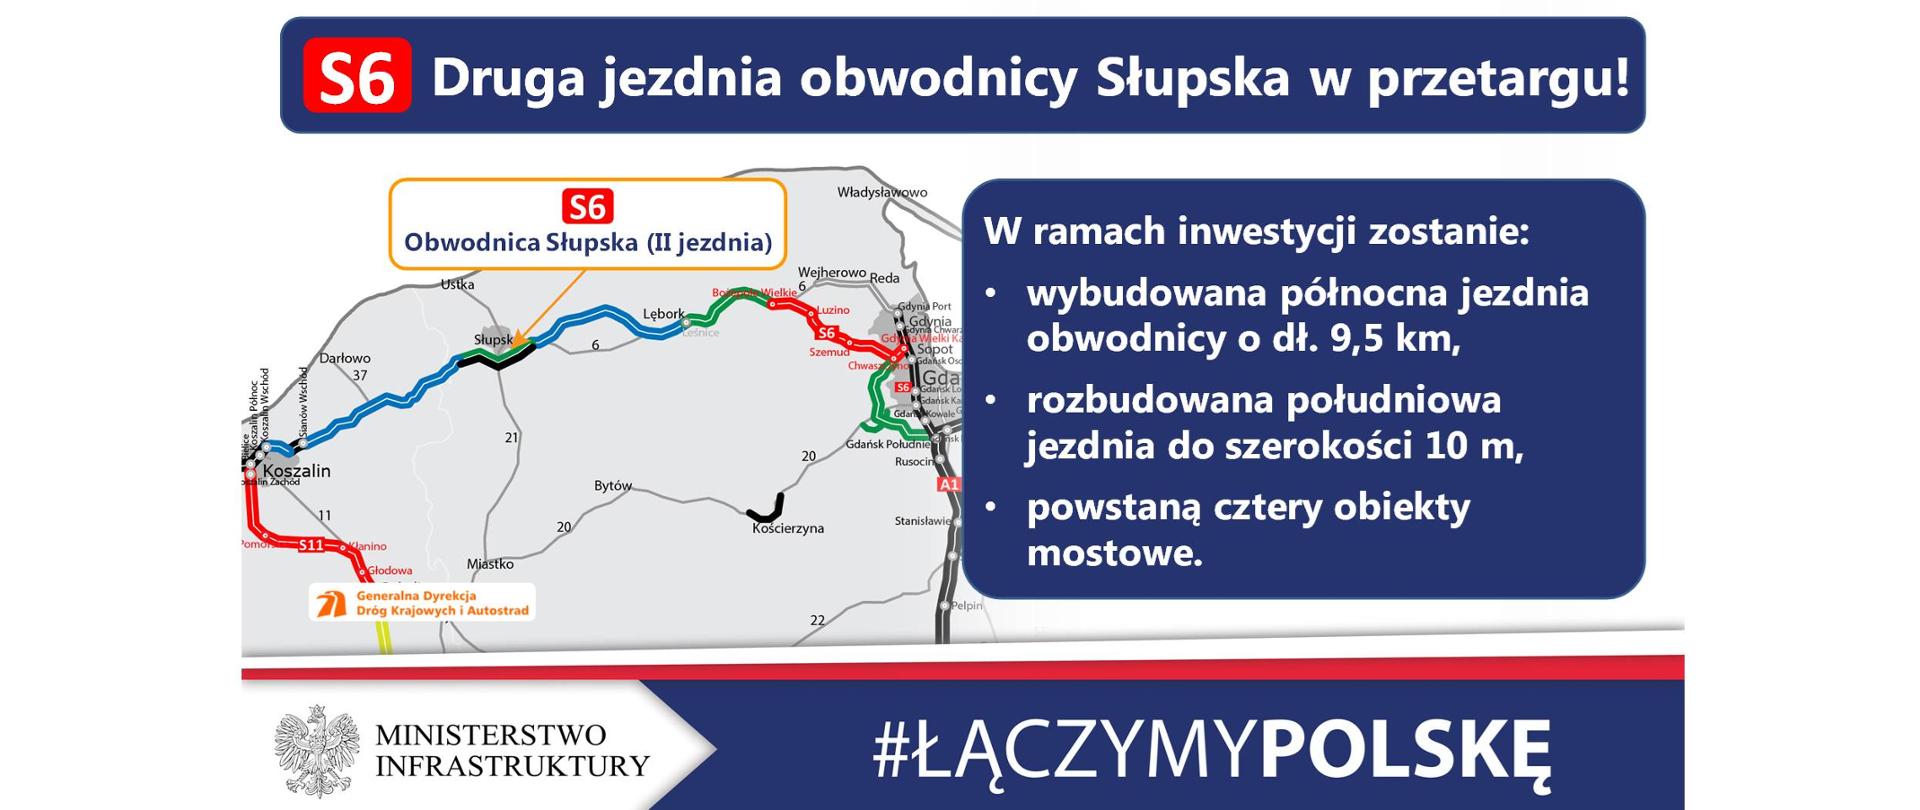 Rozpoczyna się postępowanie przetargowe na rozbudowę obwodnicy Słupska w ciągu drogi ekspresowej S6 do pełnych dwóch jezdni